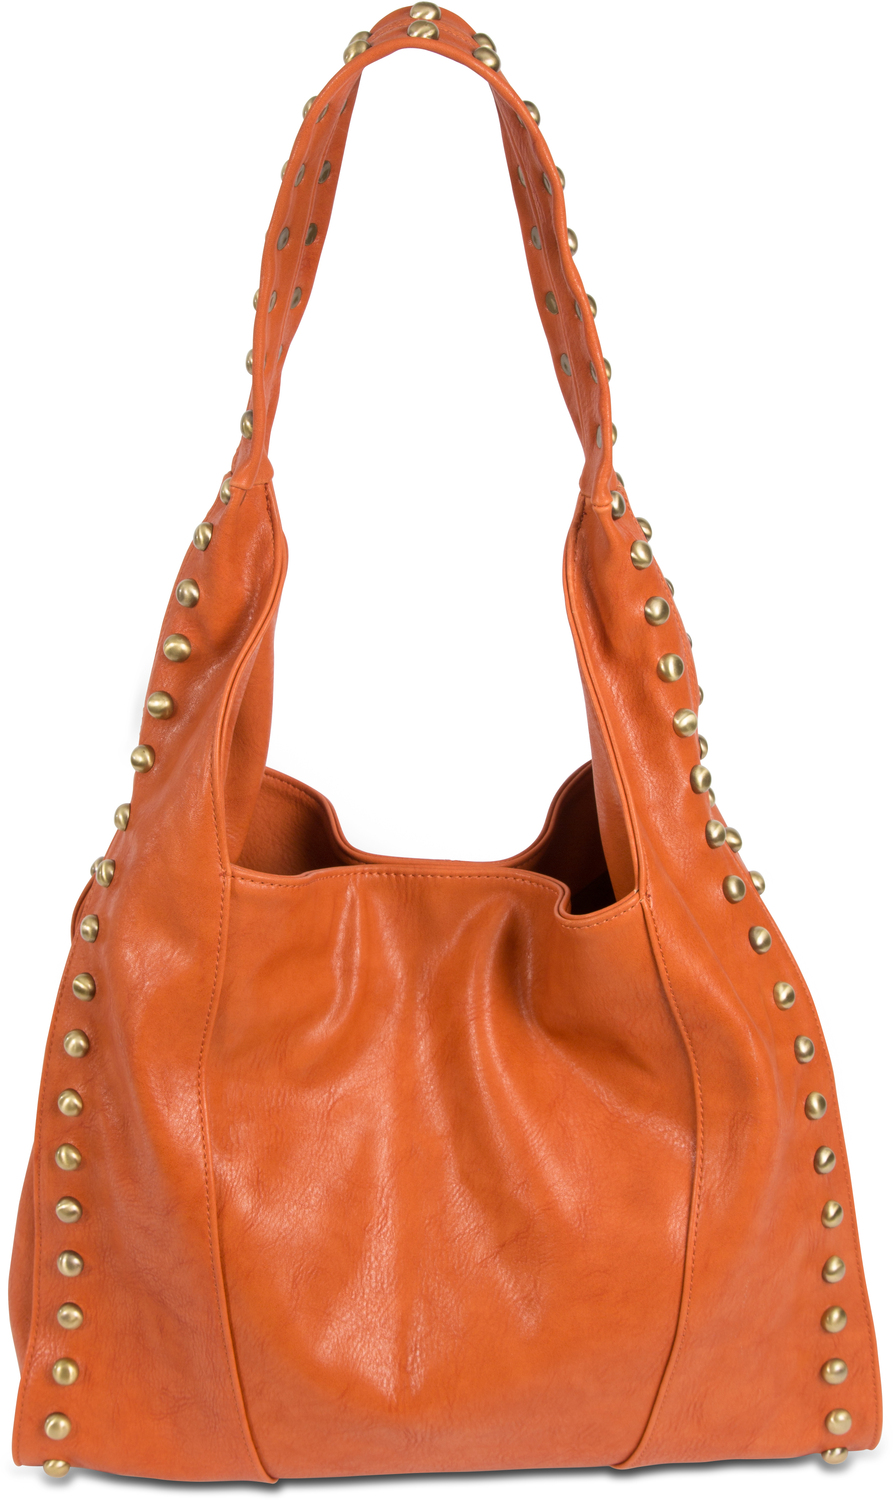 Emma Rust by H2Z Handbags - Emma Rust - 12.5" x 5" x 14.5" Handbag